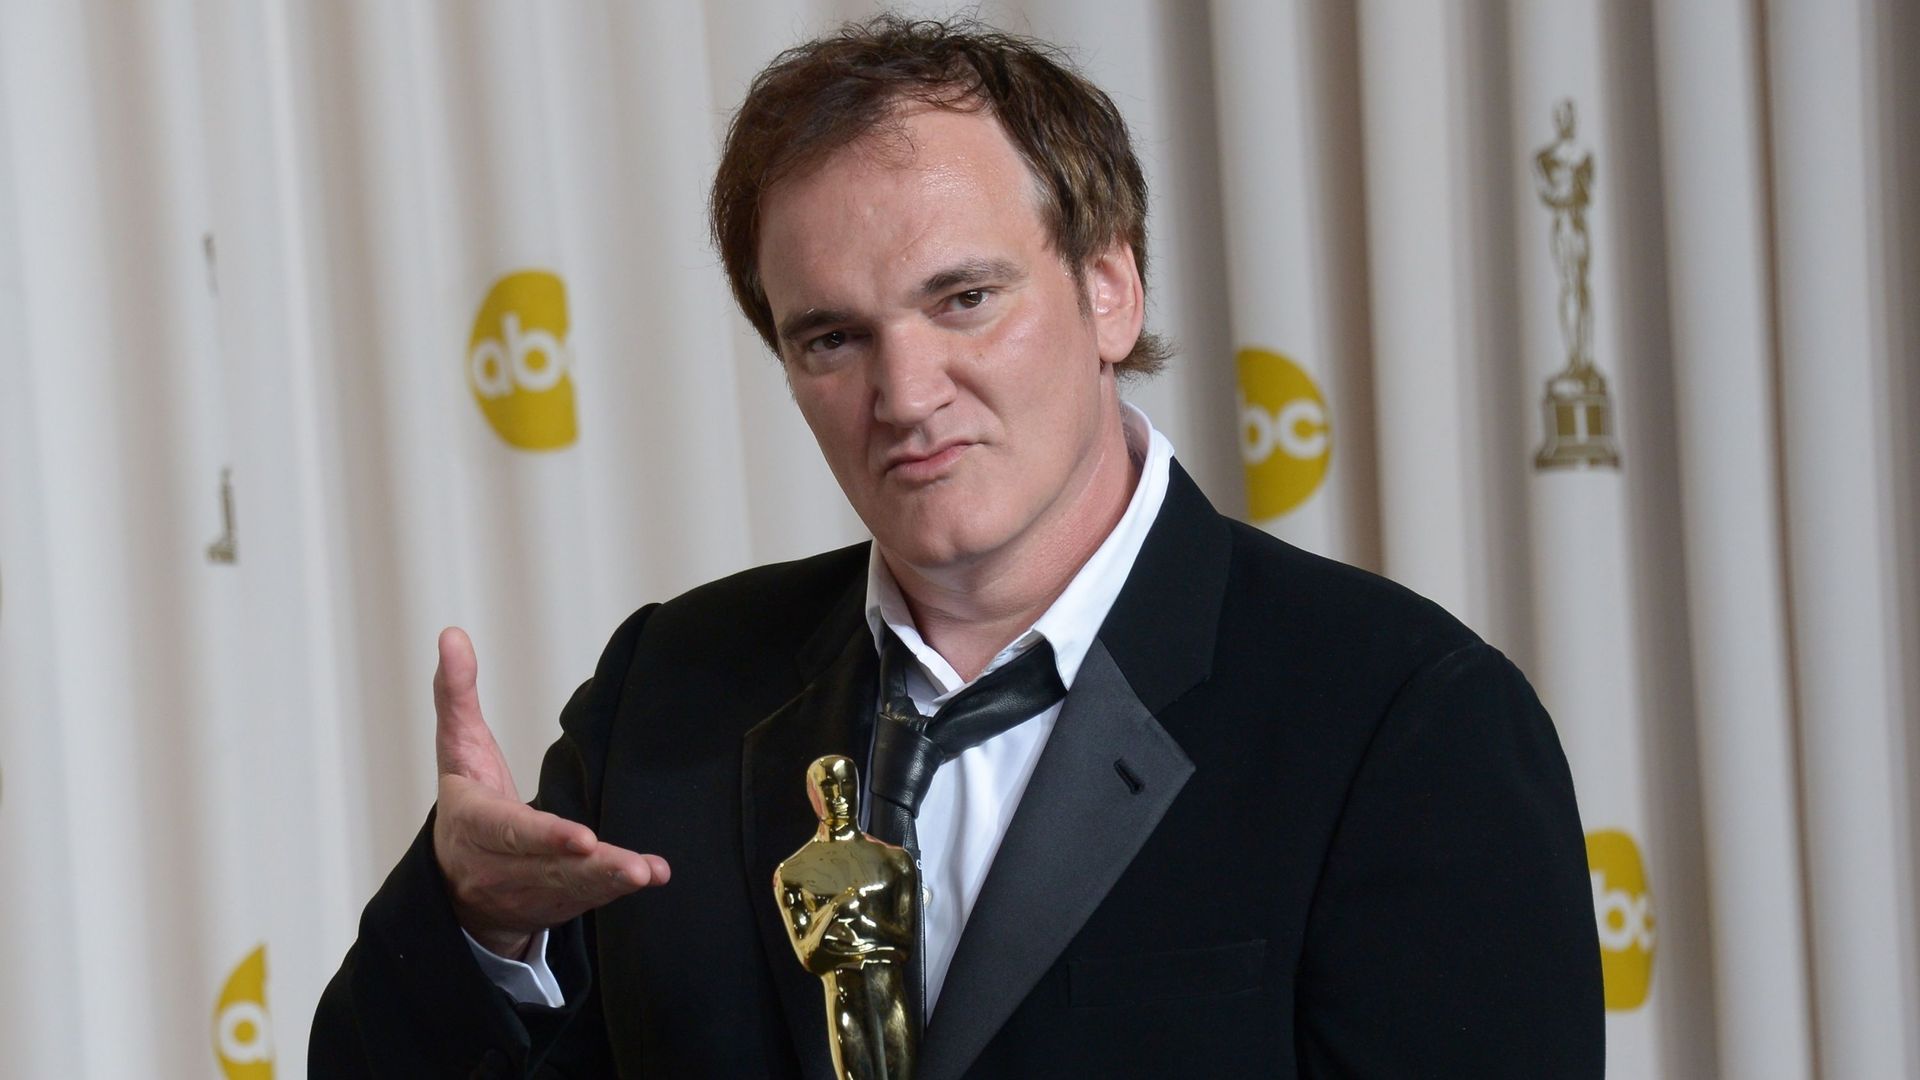 Le travail du cinéaste Quentin Tarantino sera récompensé en 2016 par une étoile sur le Hollywood Walk of Fame